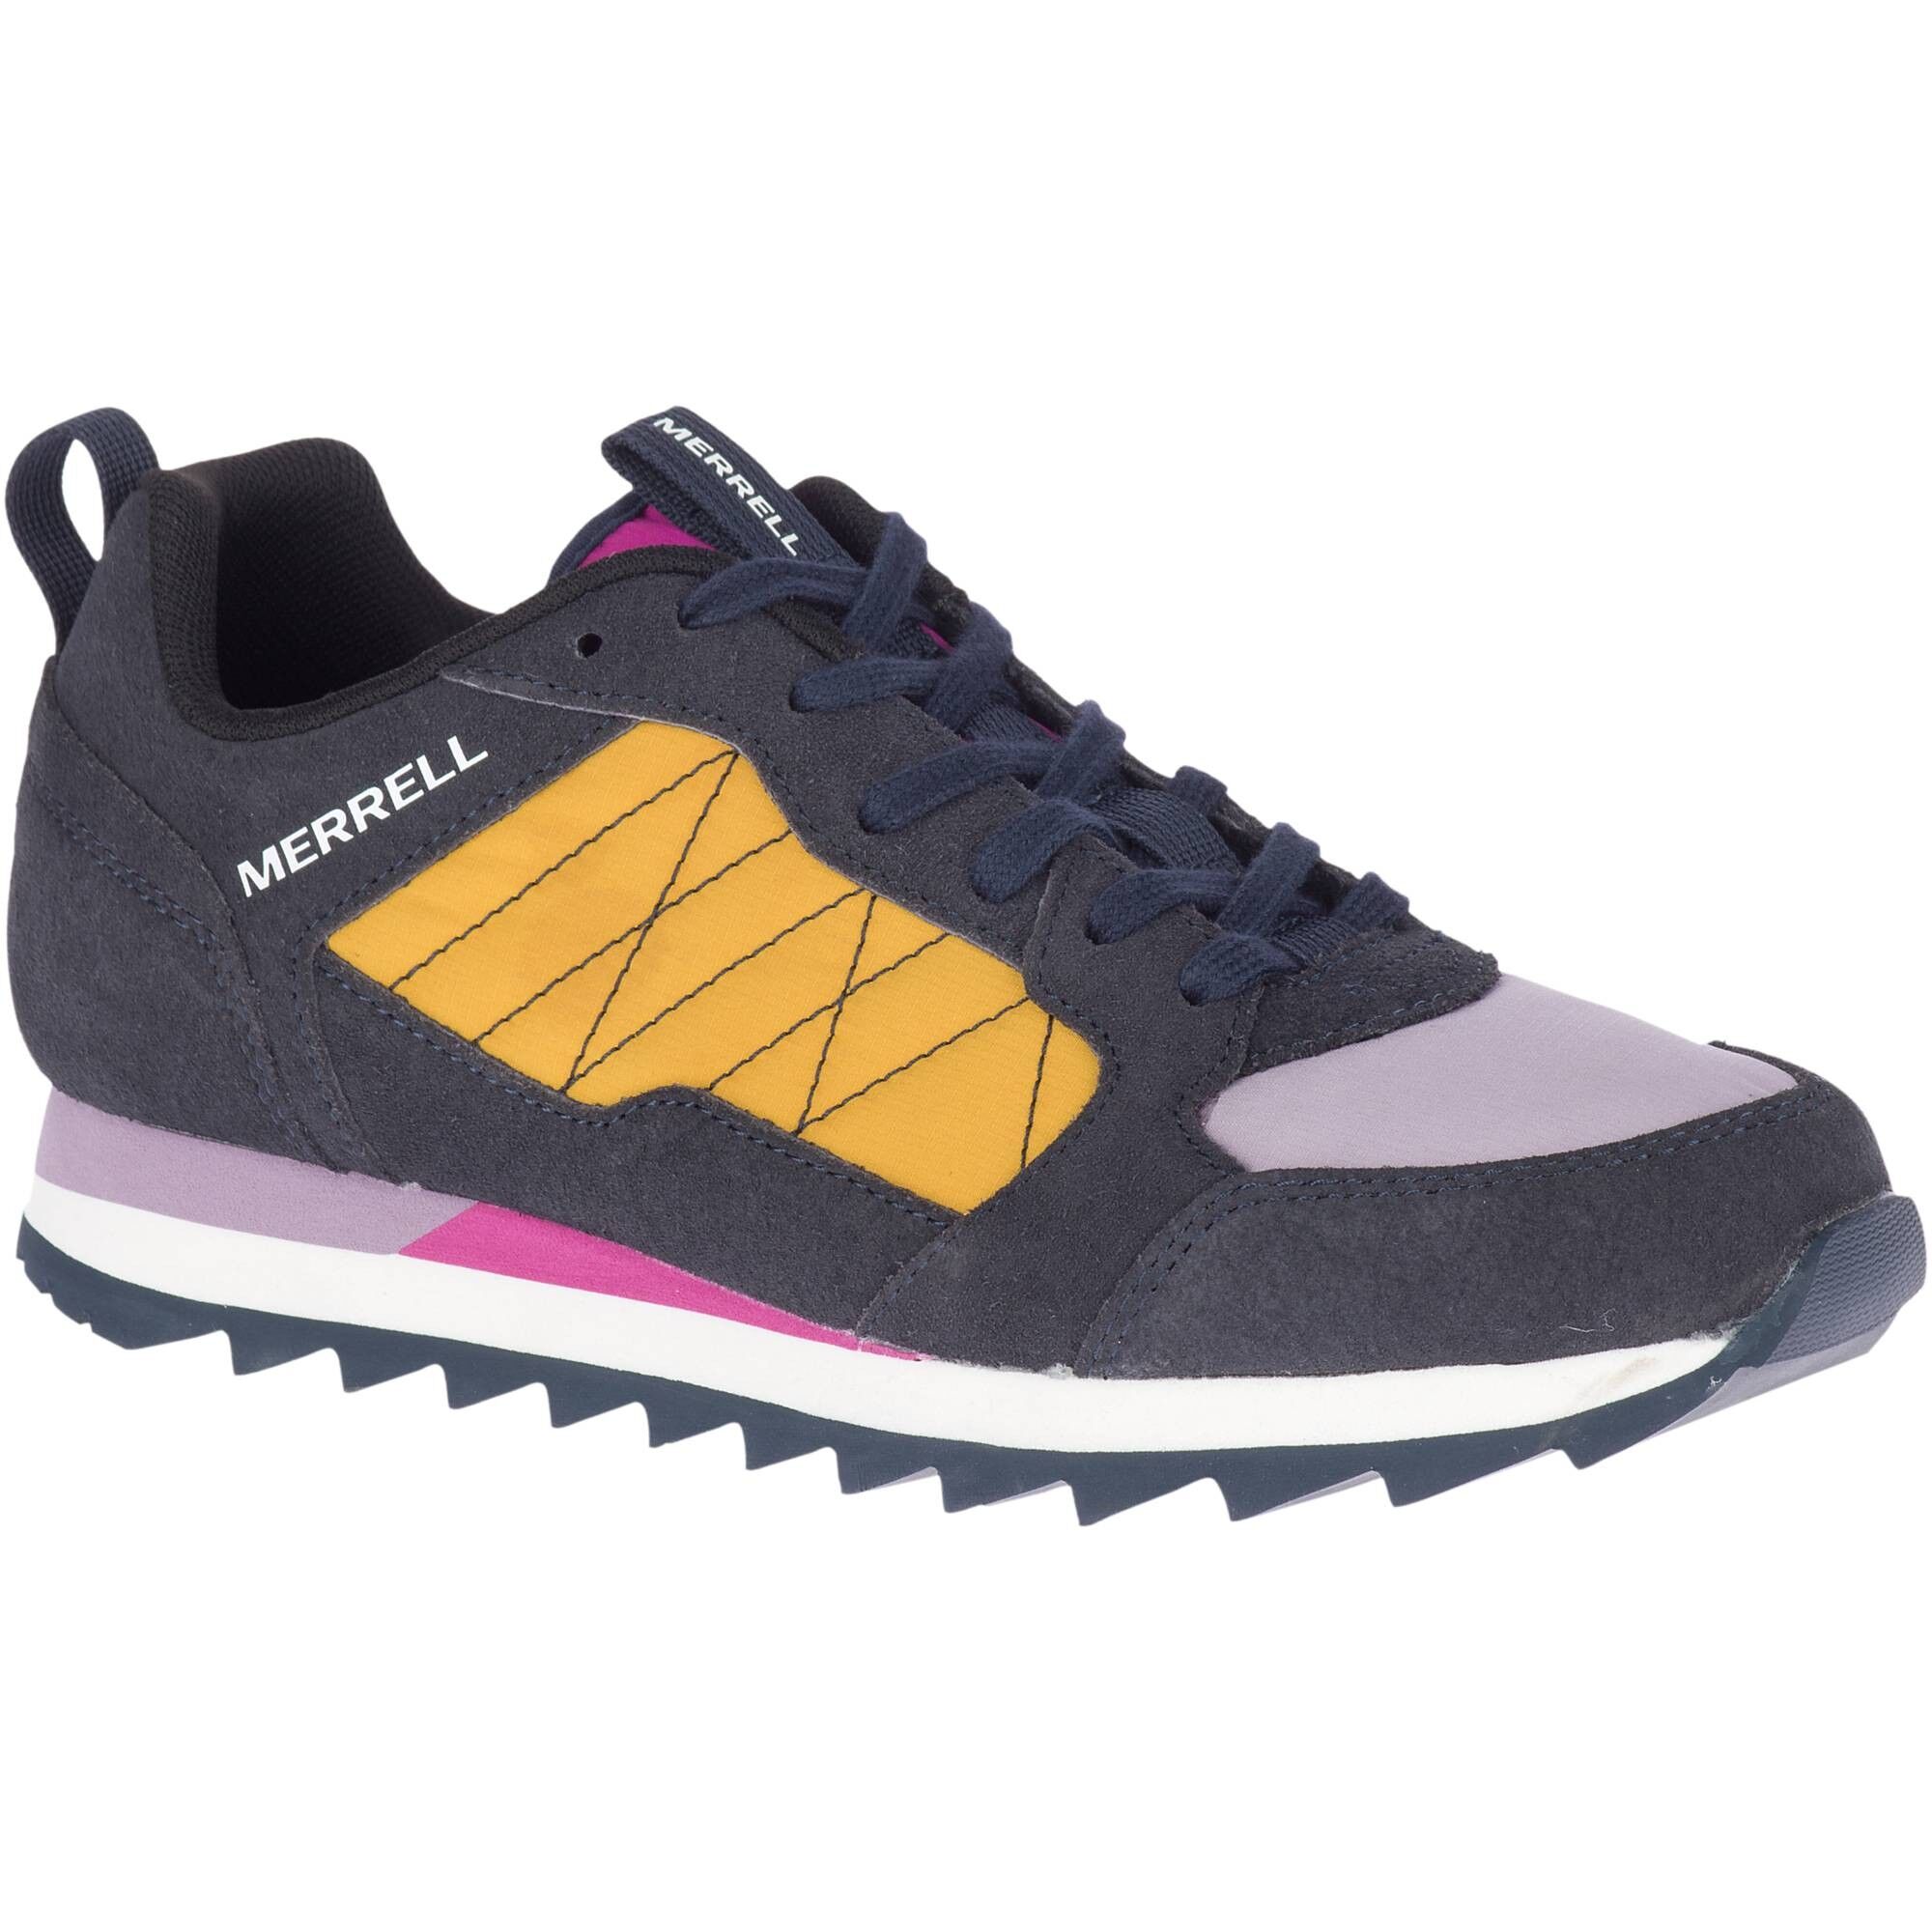 Merrell Alpine Sneaker - Schuhe - Damen